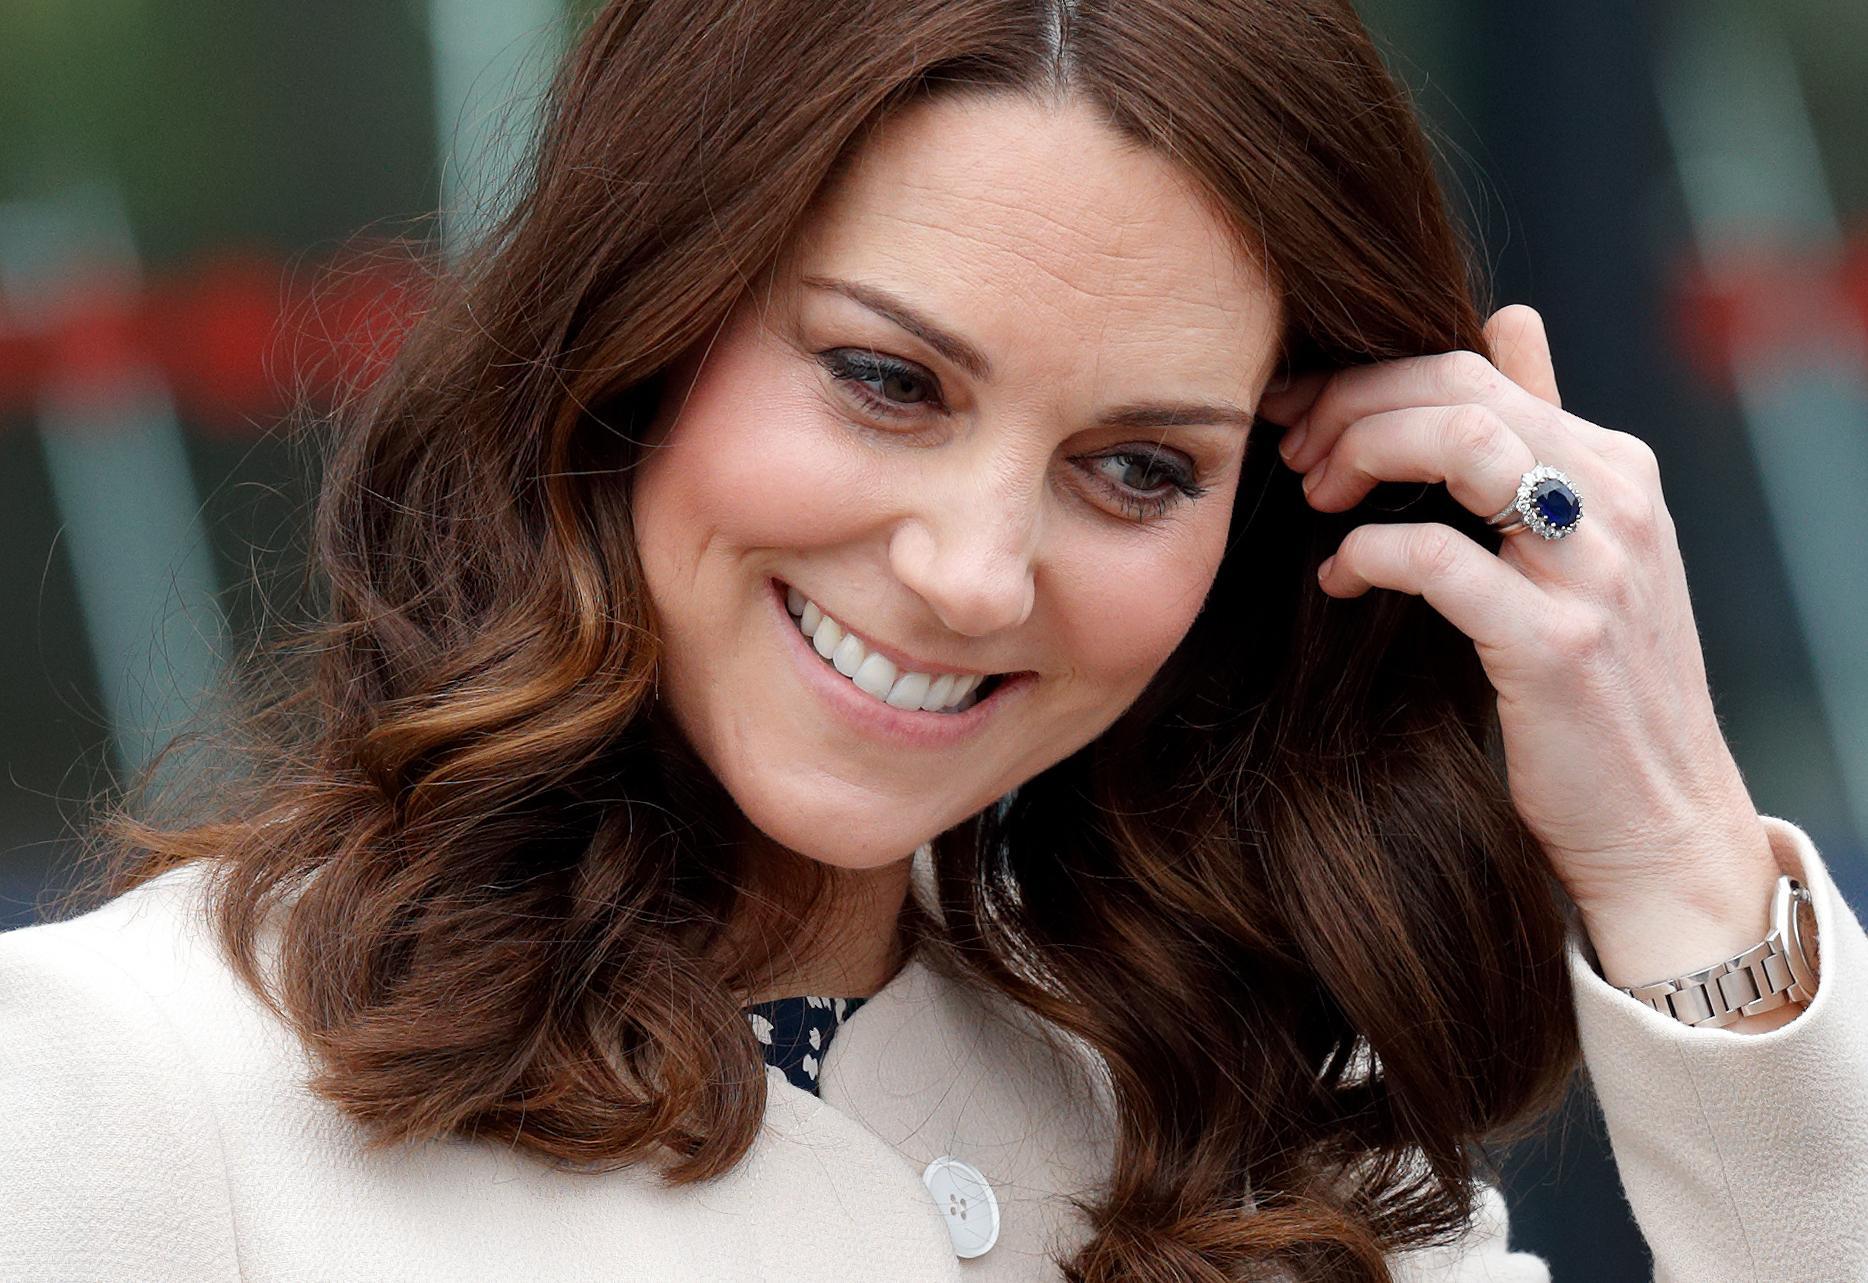 Who bows to Kate Middleton?